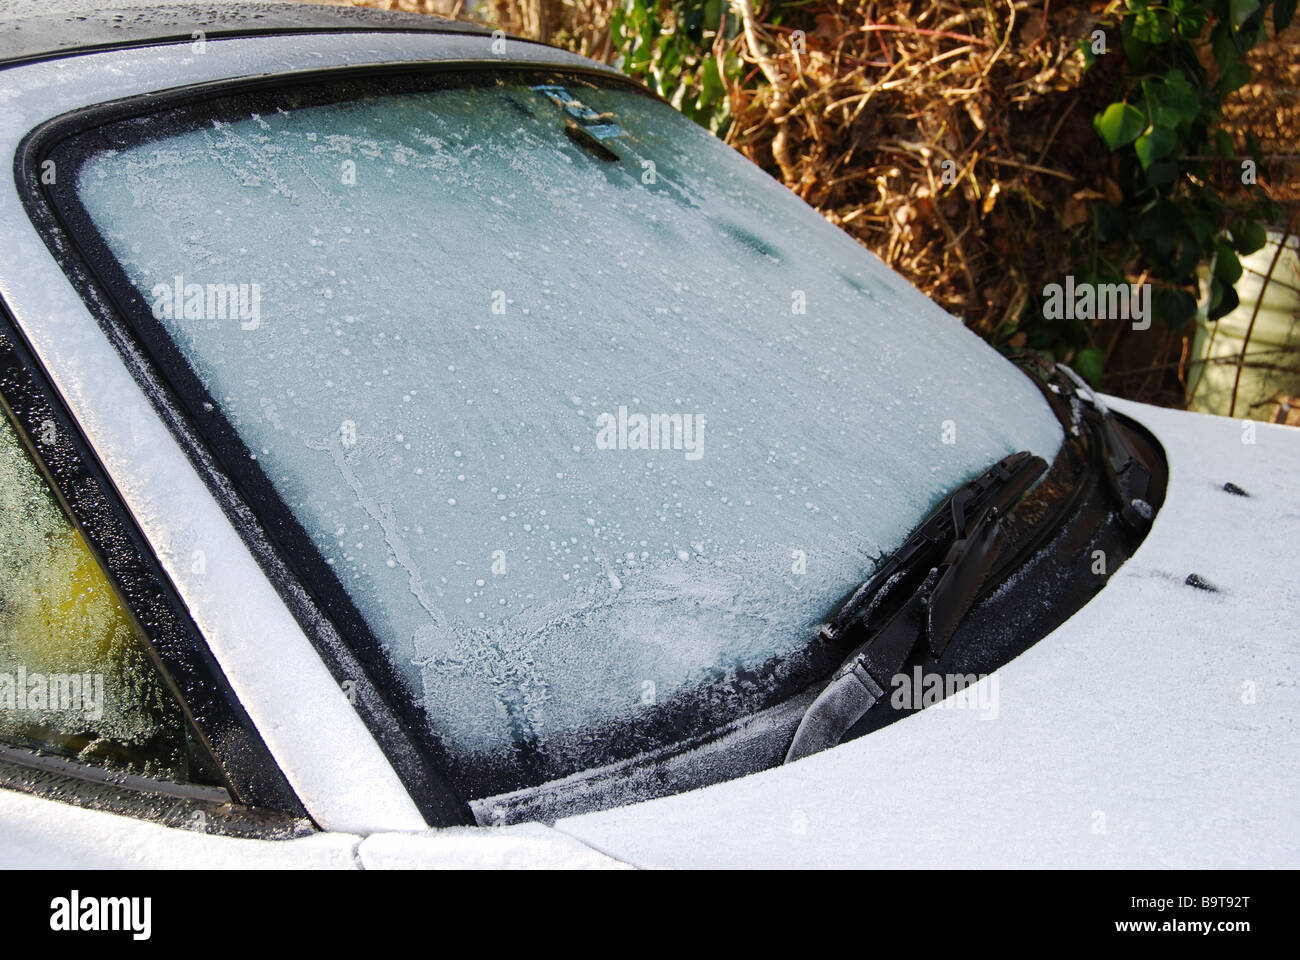 https://c8.alamy.com/compde/b9t92t/kfz-auto-windschutzscheibe-frontscheibe-bedeckt-in-frost-und-eis-b9t92t.jpg